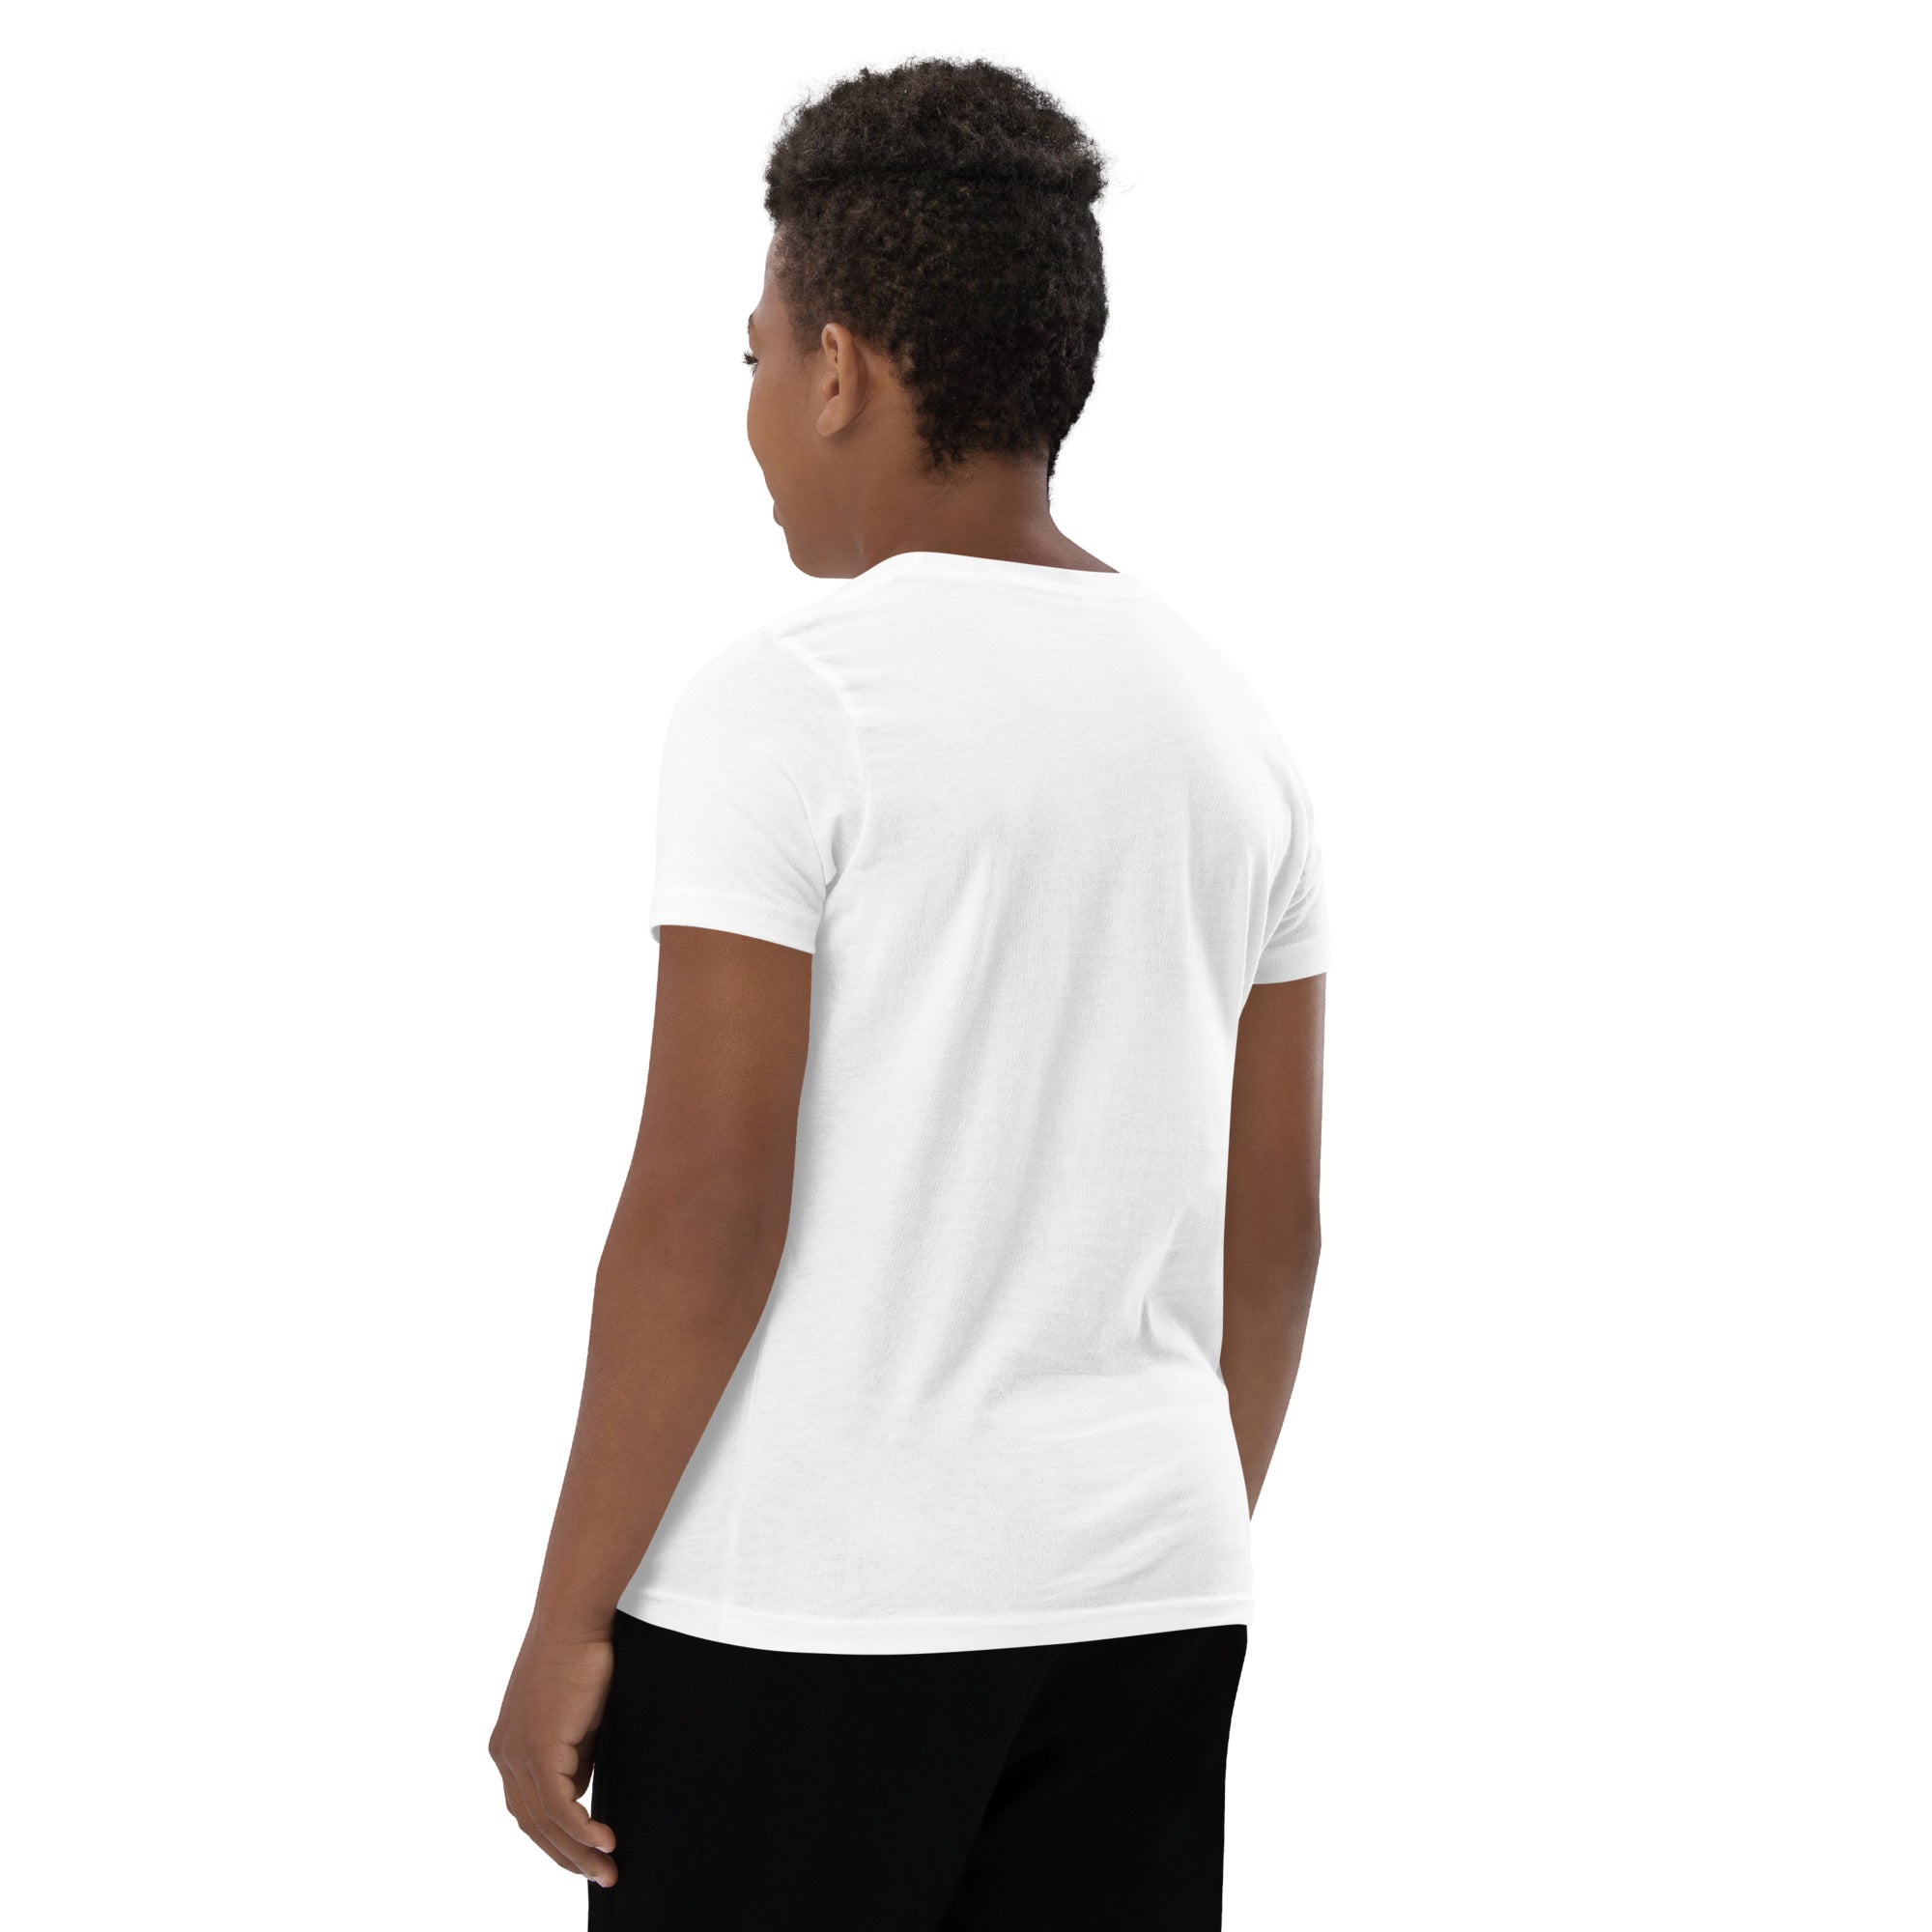 CB Logo R/B - White Youth Short Sleeve T-Shirt